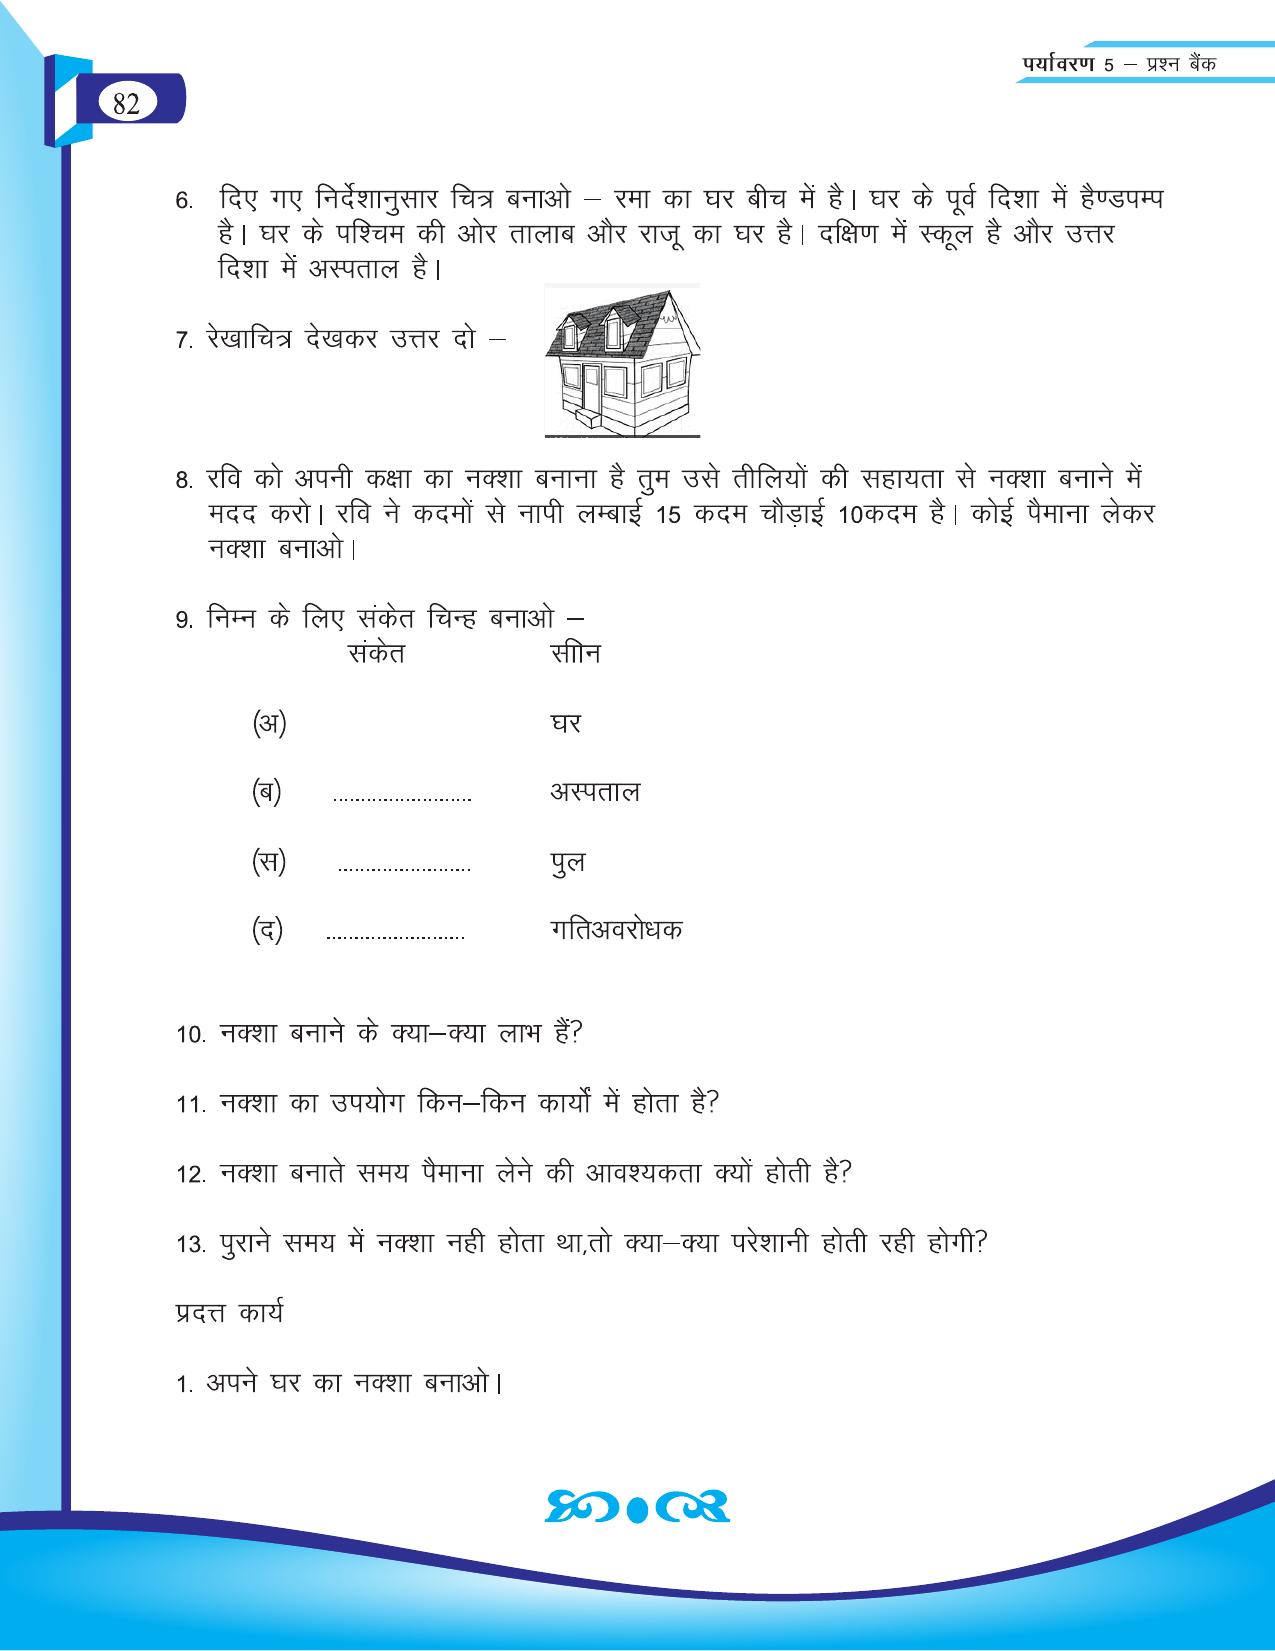 Chhattisgarh Board Class 5 EVS Question Bank 2015-16 - Page 8